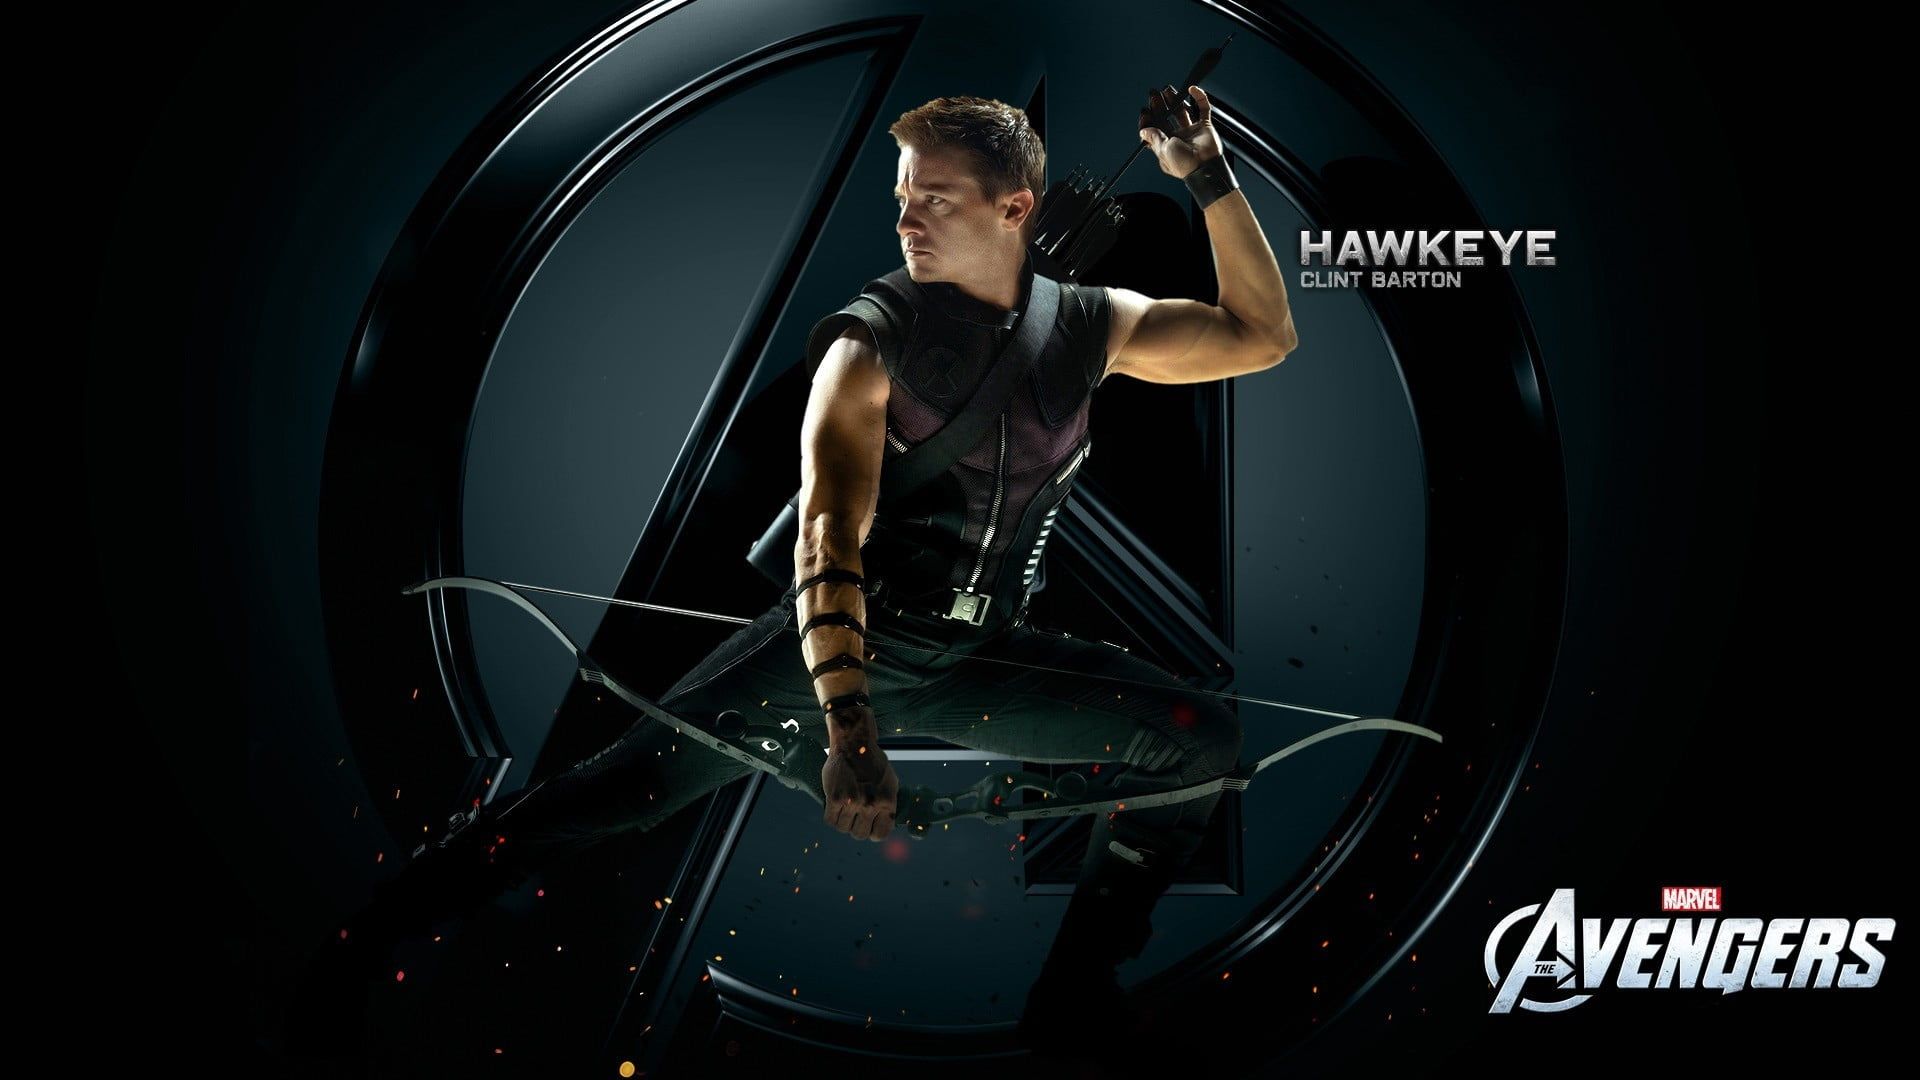 Marvel Avengers digital wallpaper, Hawkeye, Clint Barton, Jeremy